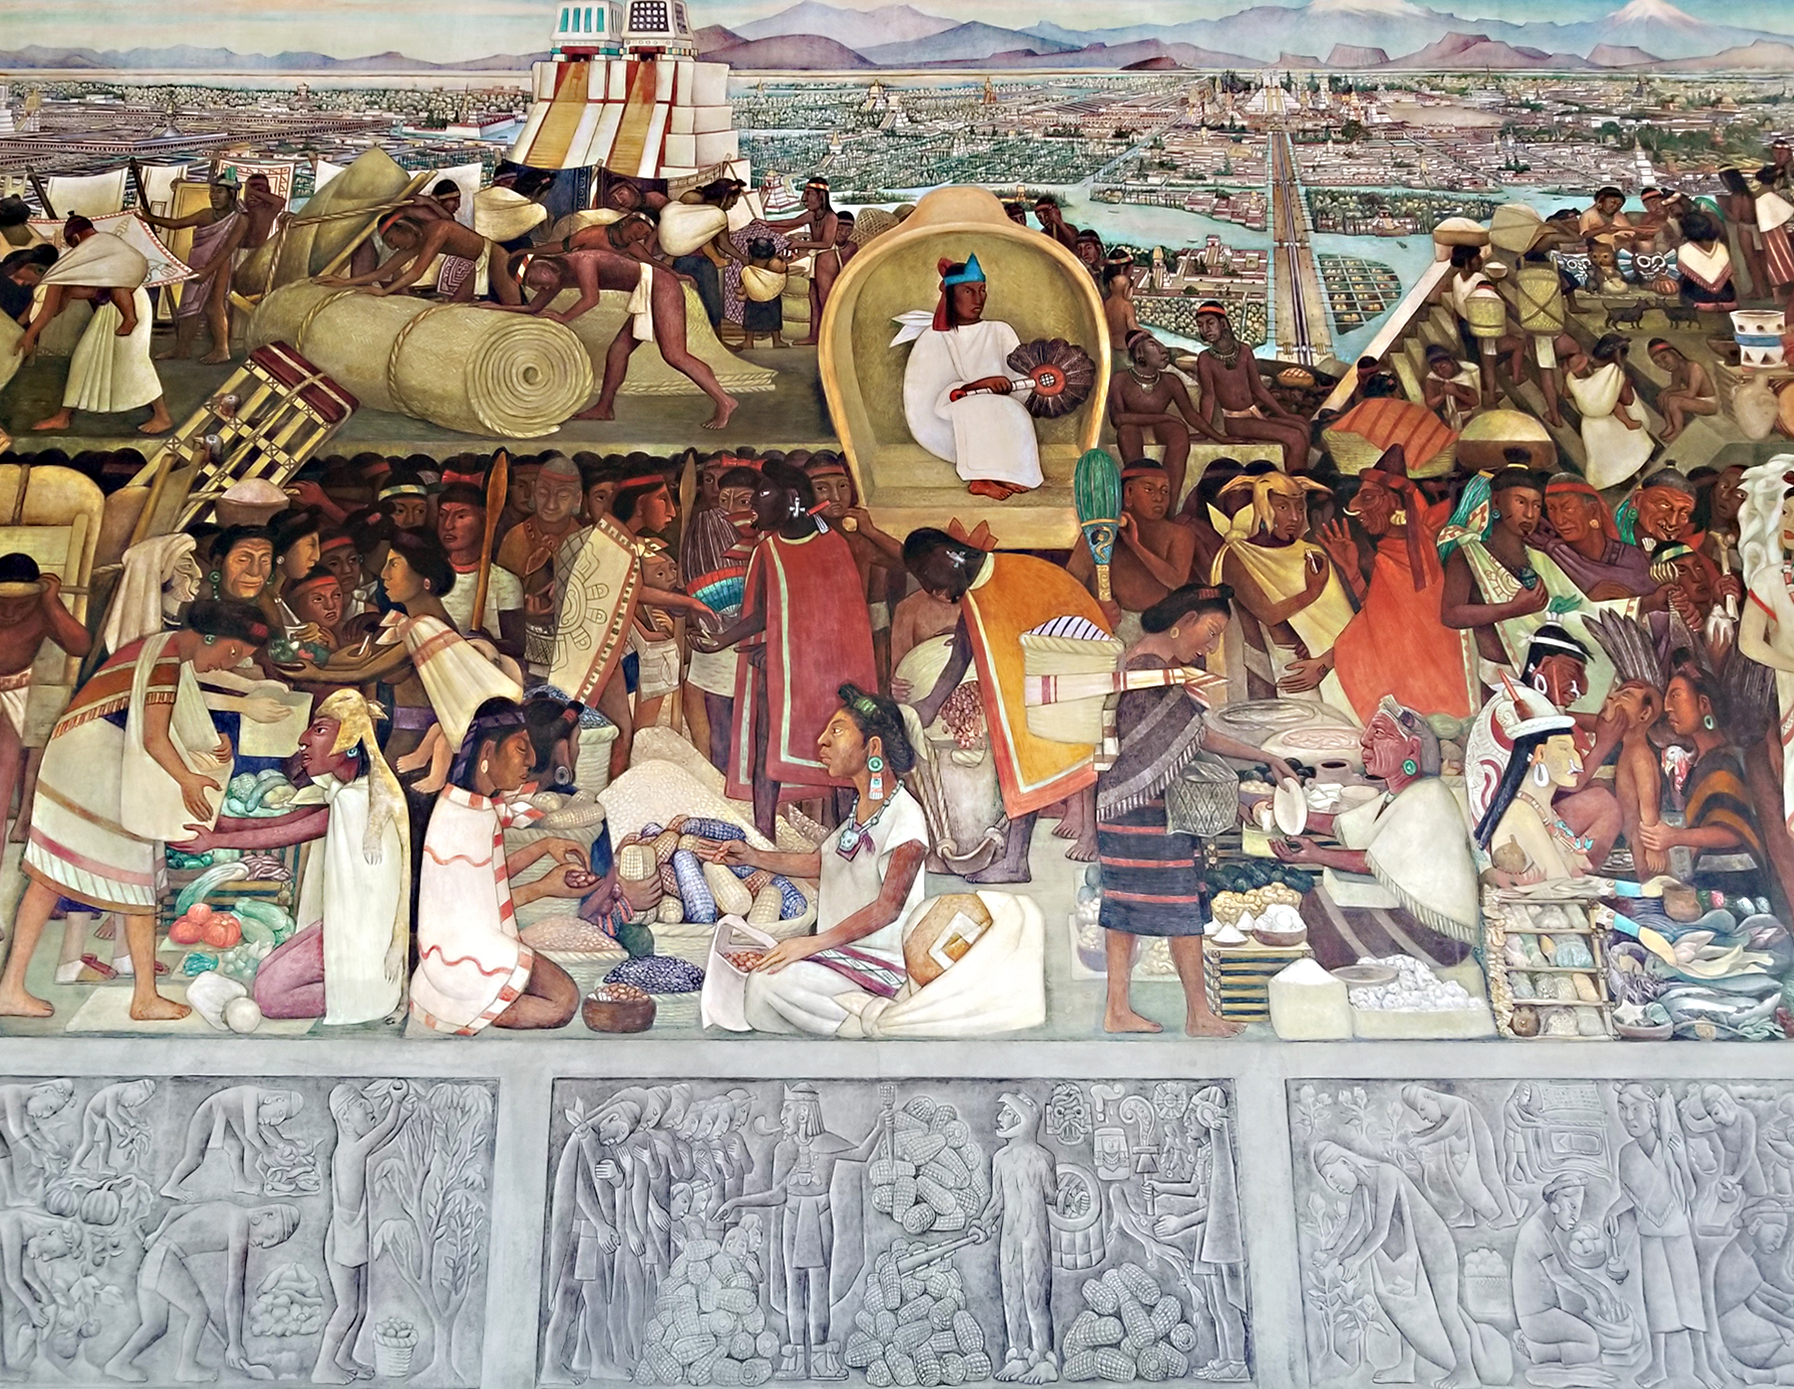 J'ai testé à Mexico: le tour de muralisme mexicain